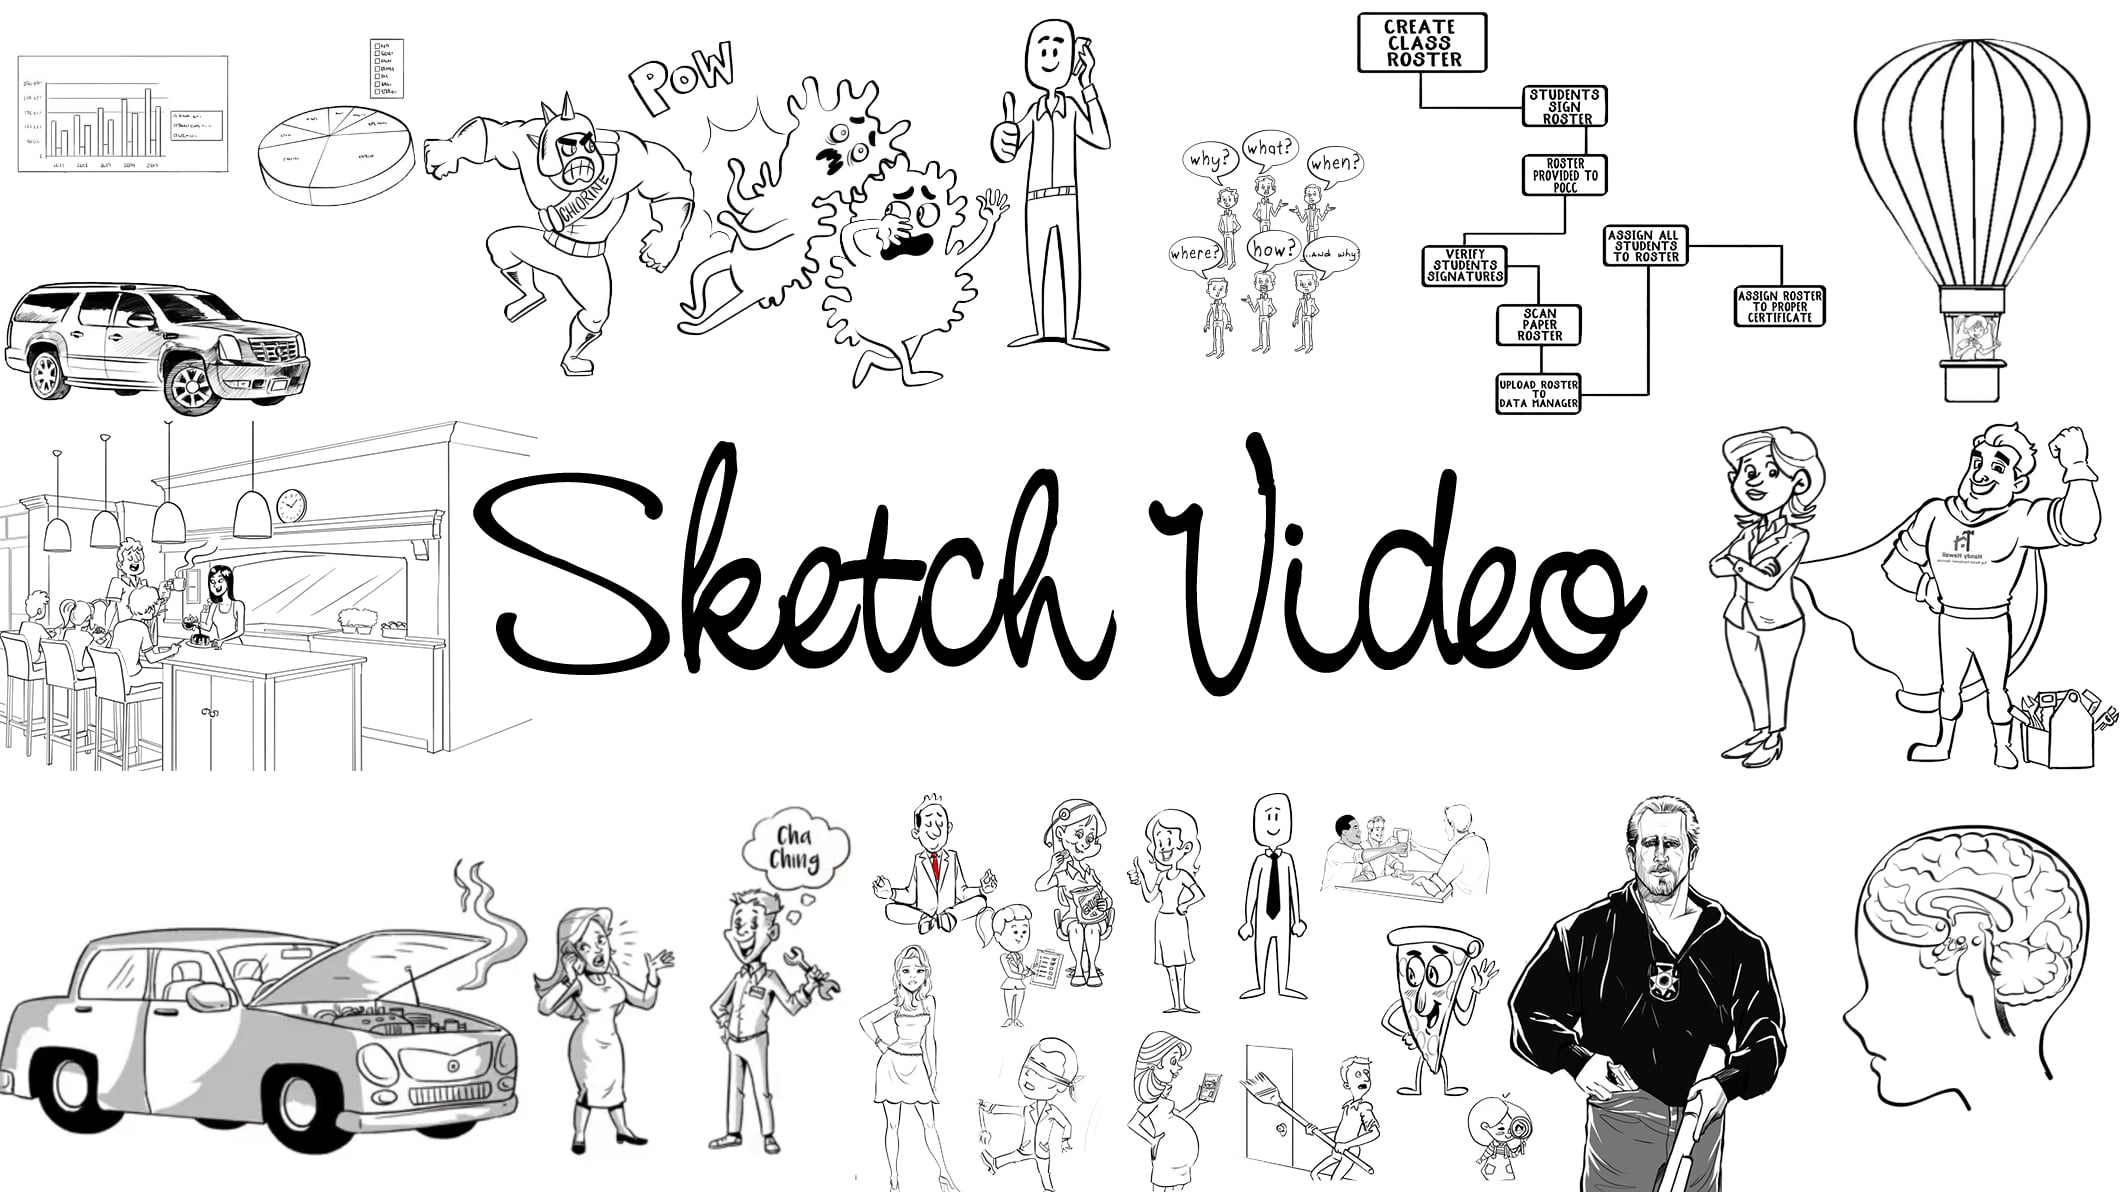 Best Custom Whiteboard Sketch Videos - Whiteboard Video